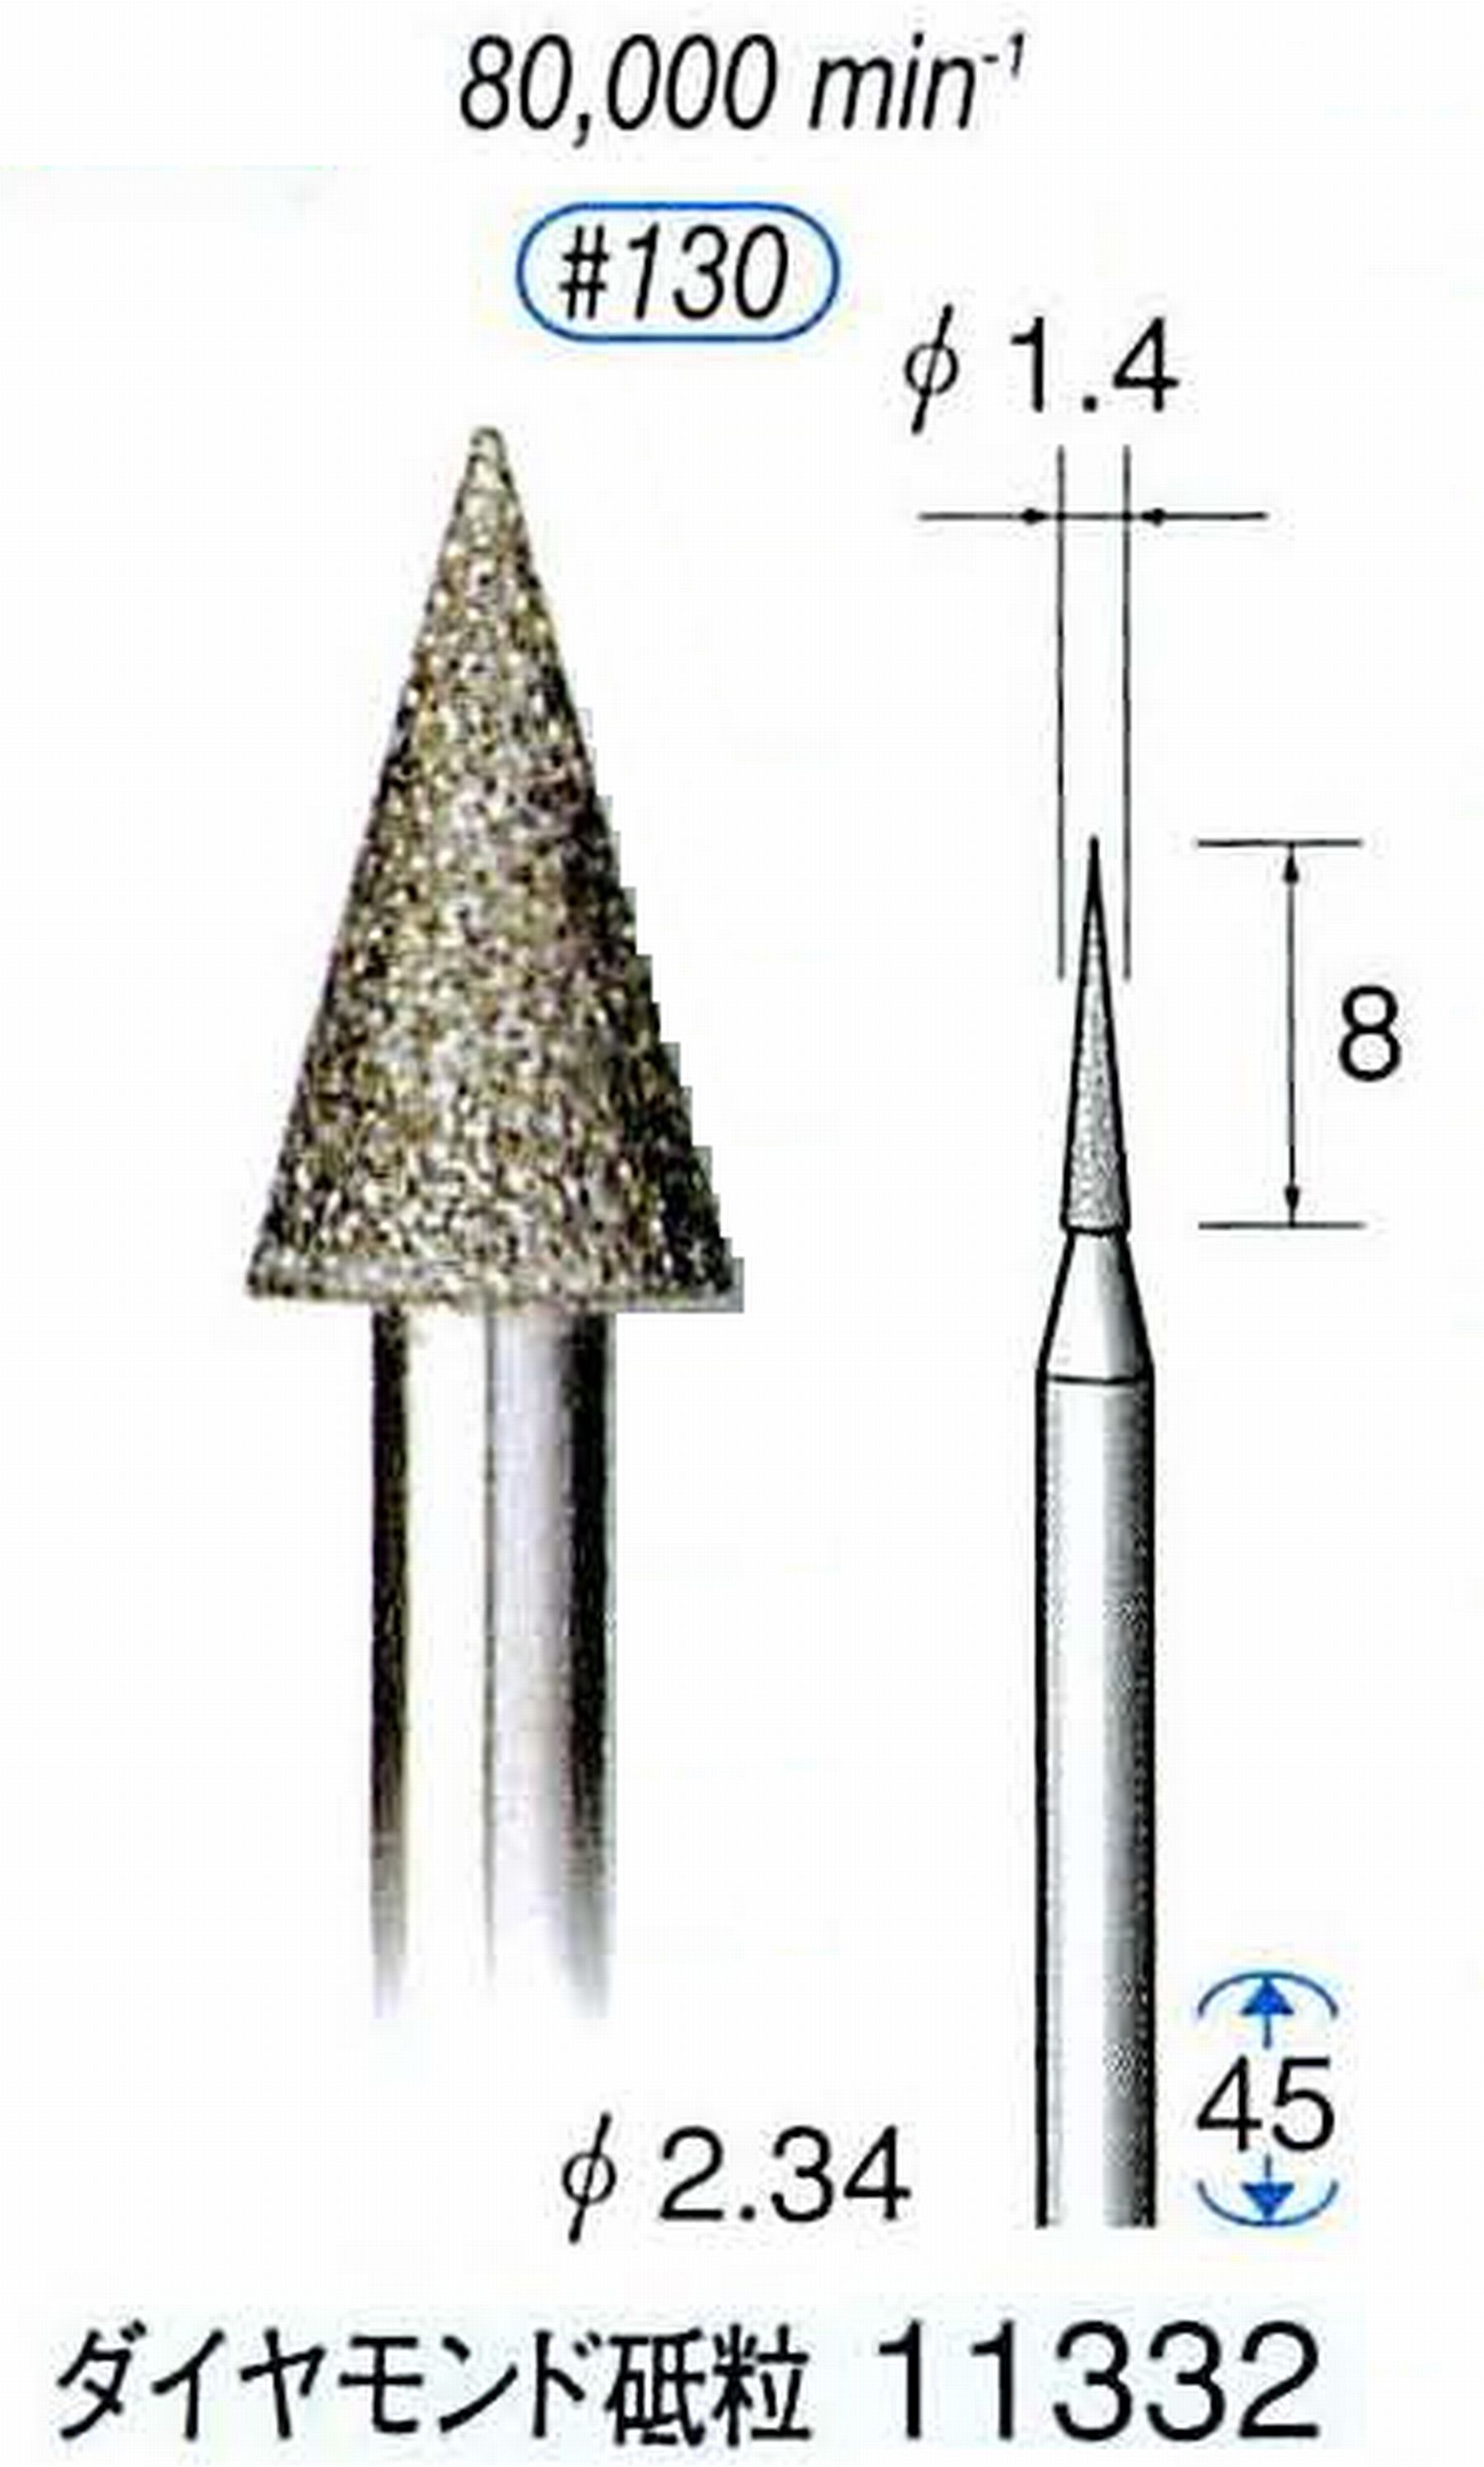 ナカニシ/NAKANISHI 電着ダイヤモンドバー ダイヤモンド砥粒 軸径(シャンク)φ2.34mm 11332